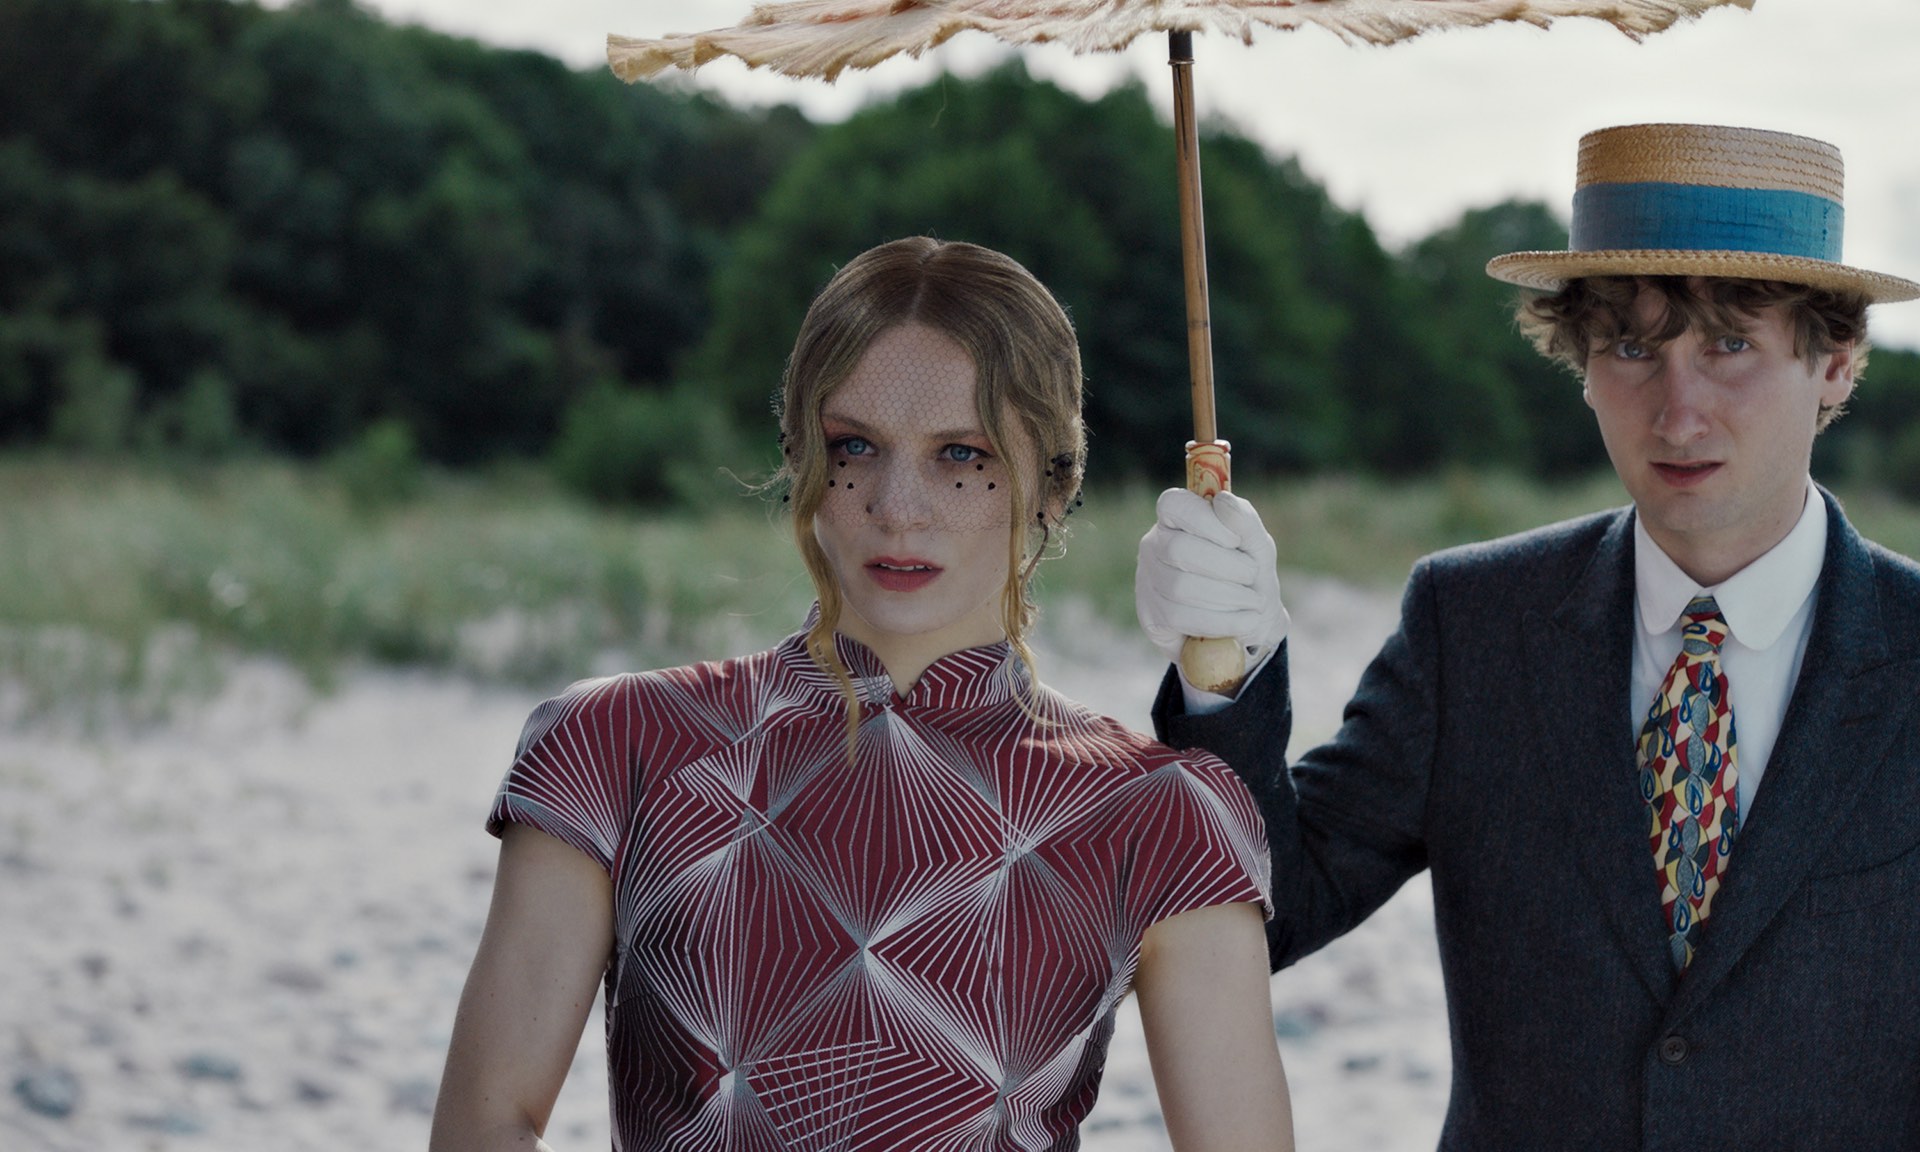 Zu sehen ist ein Still aus dem Film „Blutsauger“ auf dem zwei blasse, vampirmäßig aussehende Personen am Strand erschrocken in die kamera schauen, während sie sich mit einem Schirm in der Hand vor der Sonne schützen.